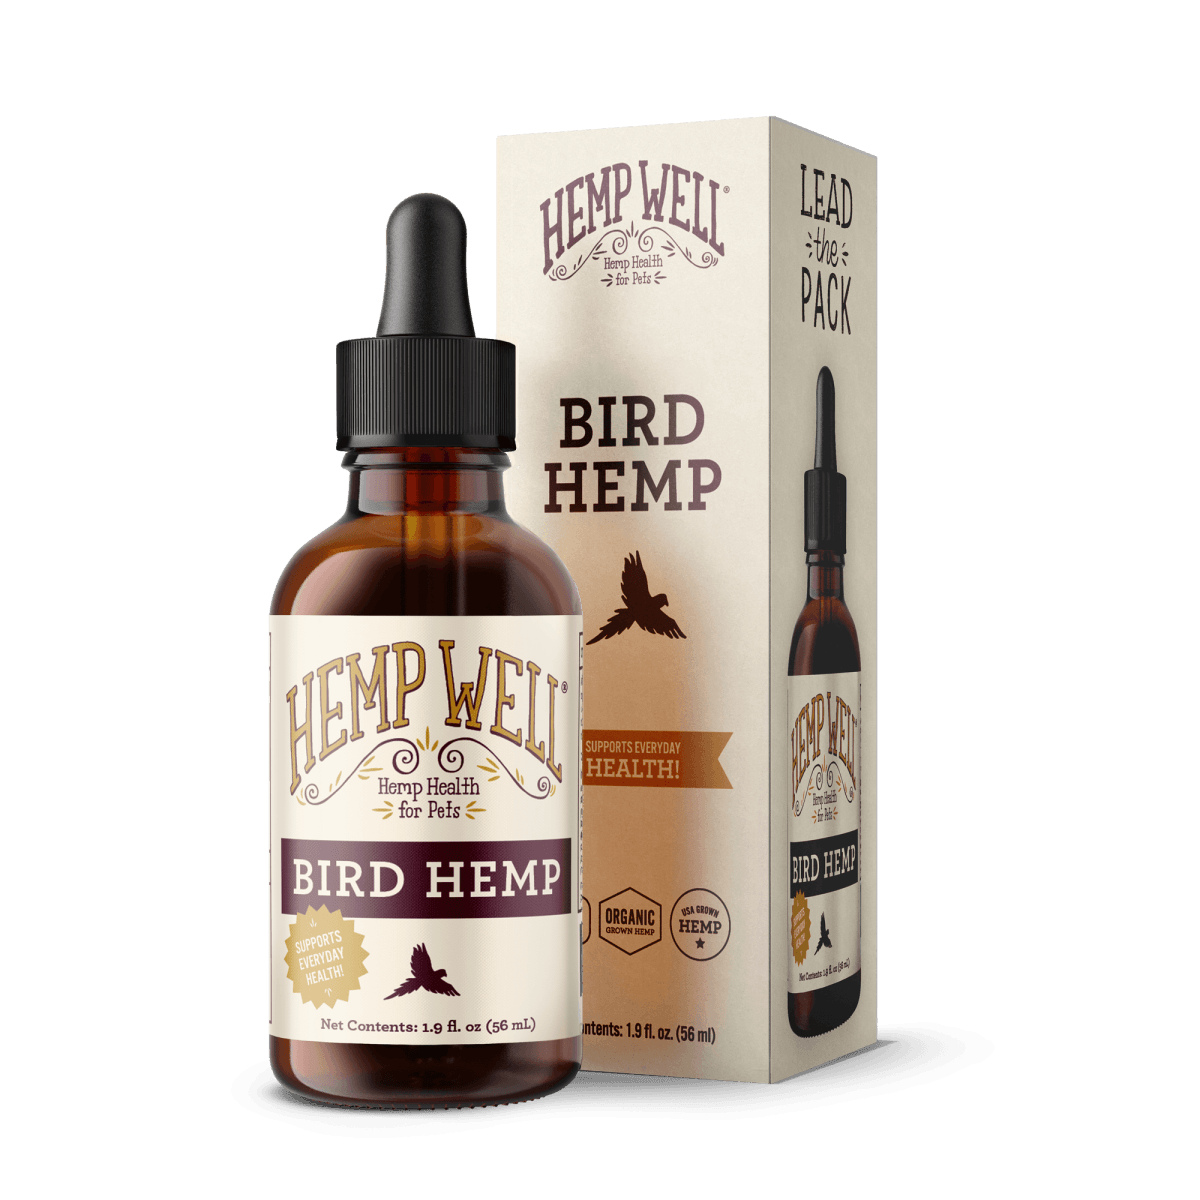 Bird Hemp Oil - Hemp Well avian hemp products bird bird health supplements